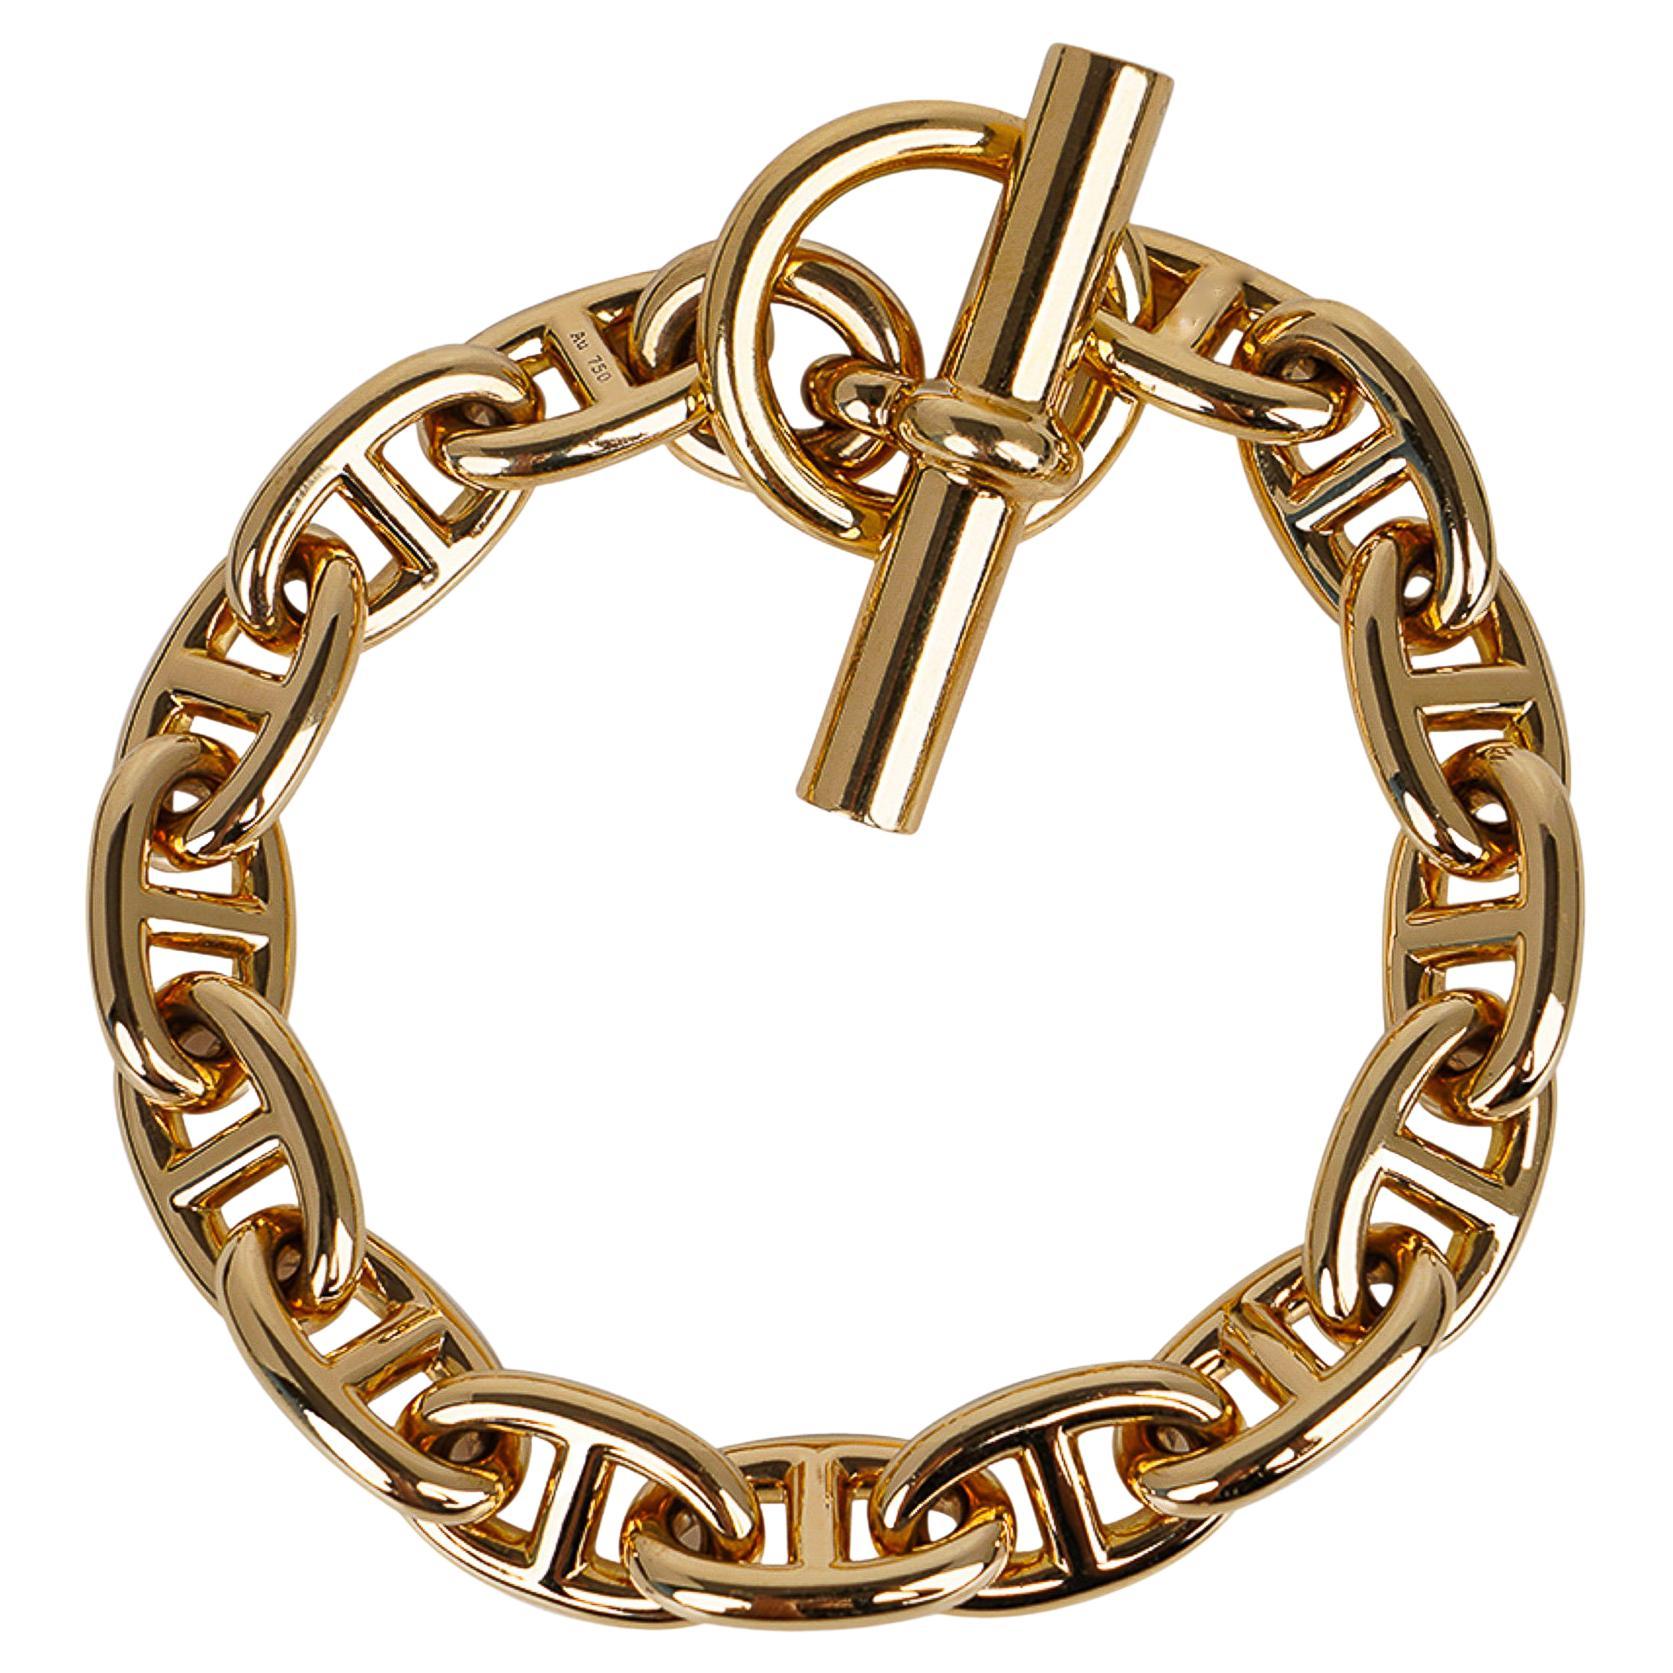 Mightychic bietet eine Hermes Chaine d'Ancre MM-Armband in 18k Gelbgold vorgestellt.
Diese Schönheit, die nicht mehr in Gelbgold hergestellt wird, ist ein großartiger Fund für einen begeisterten Hermes-Sammler!
Kippbarer Verschluss.
Die nautische